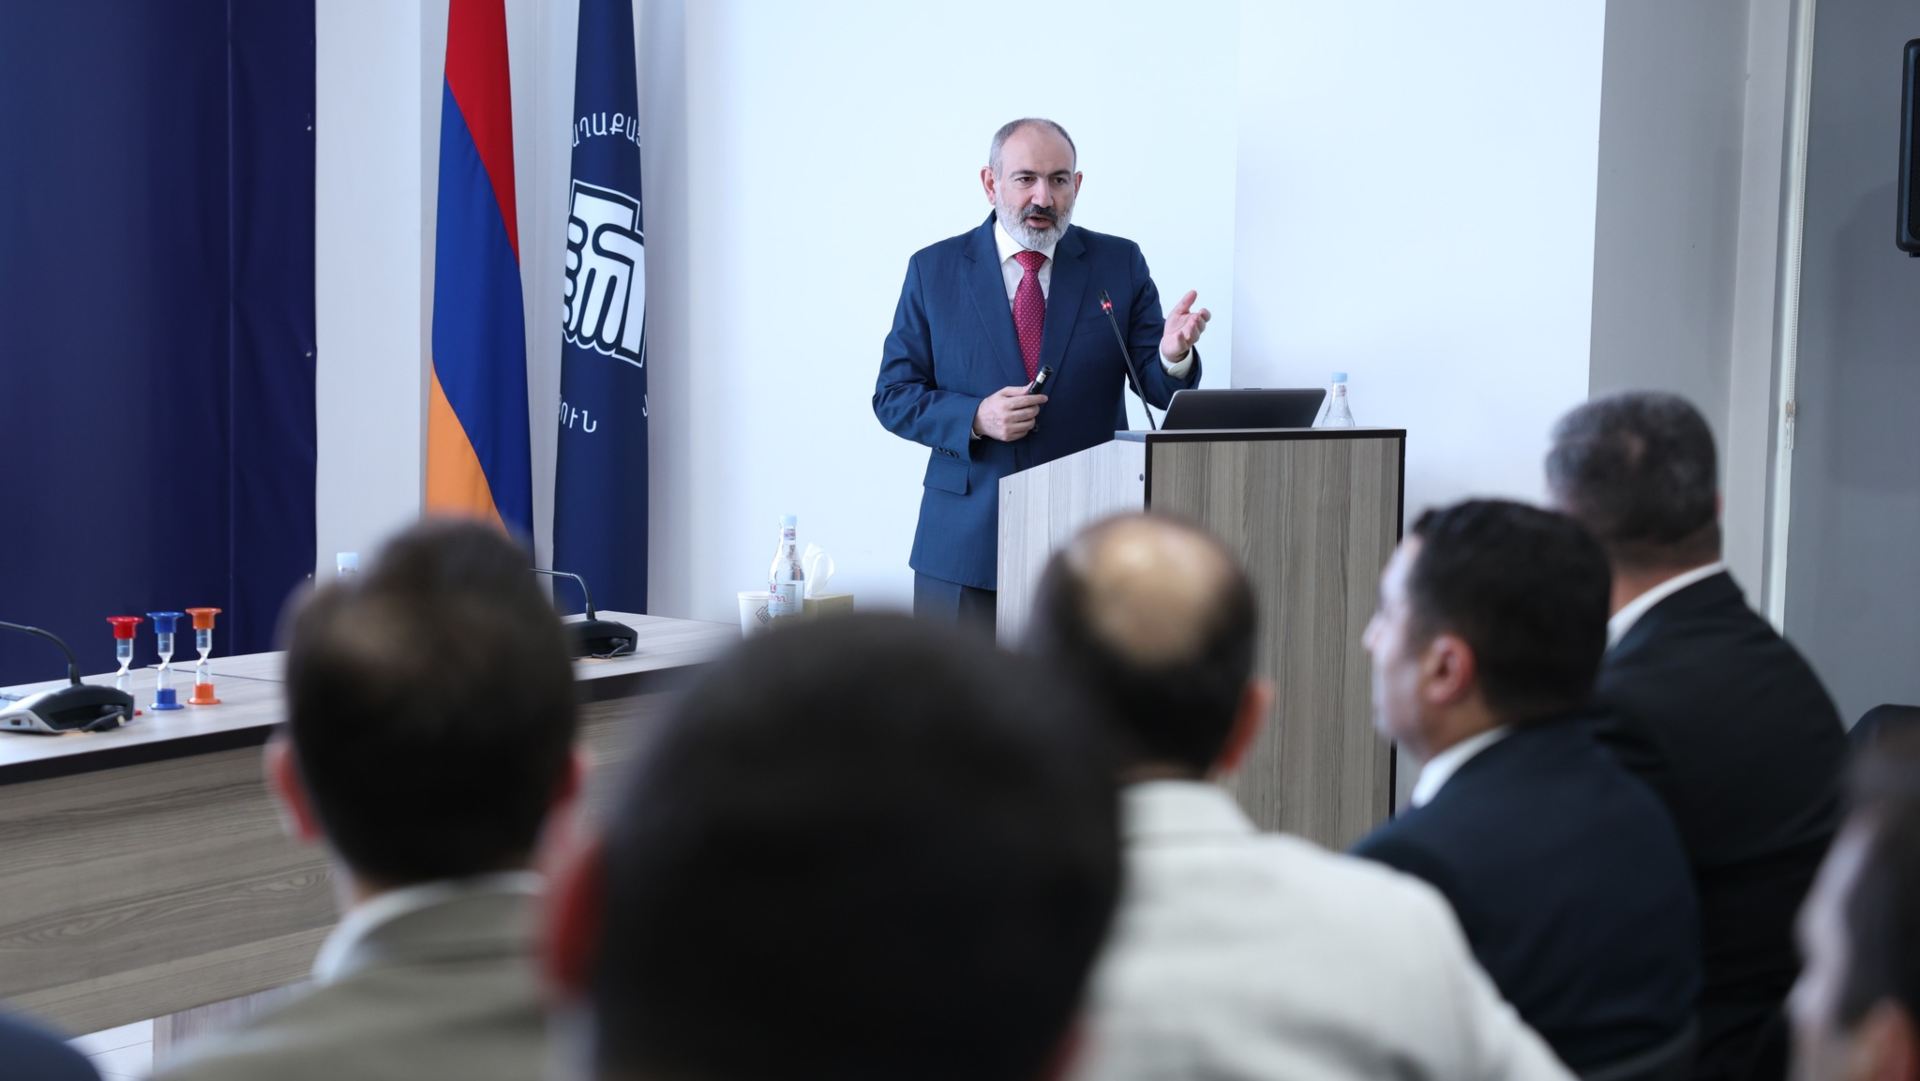 Փաշինյանը համոզված է՝ սահմանազատման գործընթացով Հայաստանի լինելիության հարցն է լուծվում